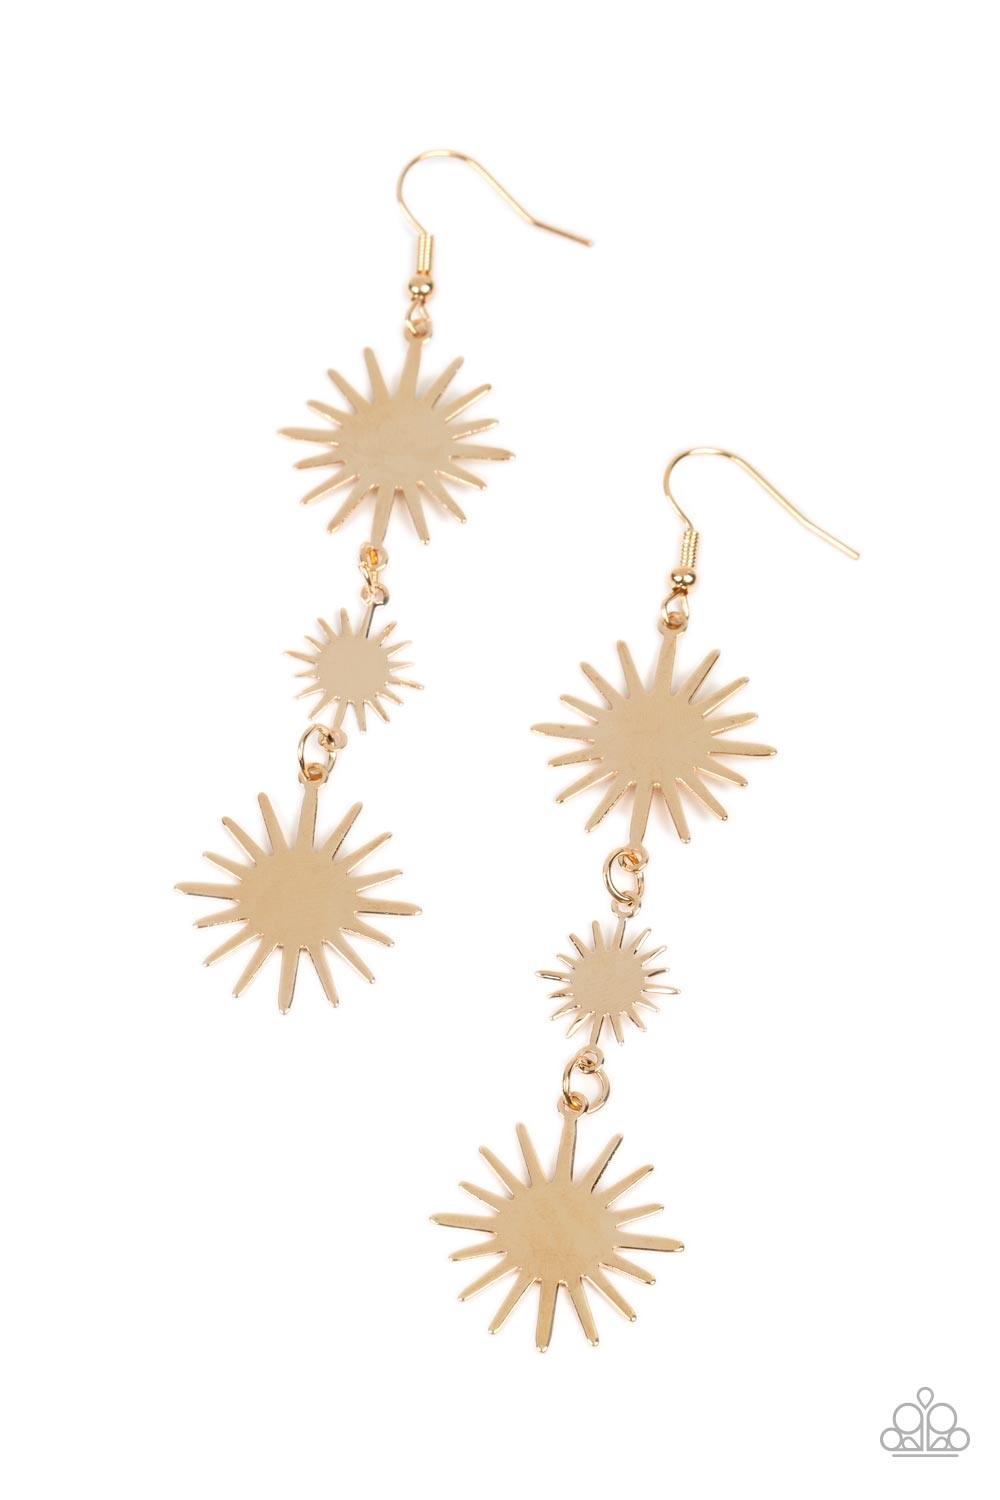 Solar Soul - Gold Earrings